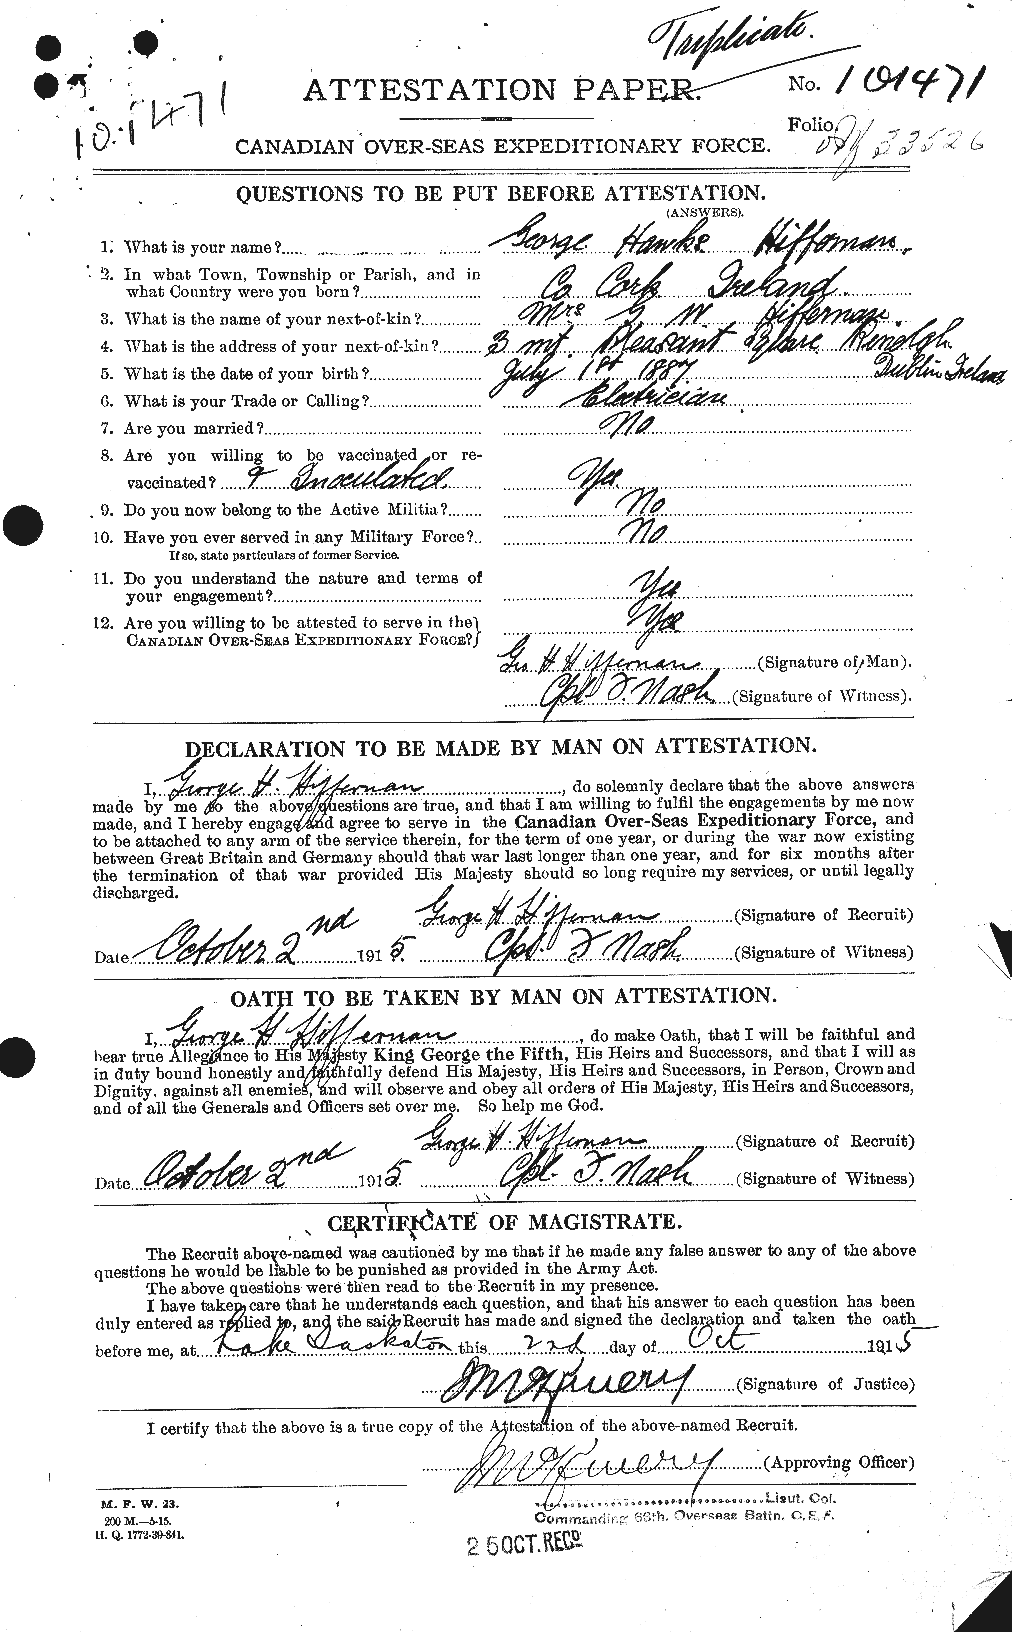 Dossiers du Personnel de la Première Guerre mondiale - CEC 391761a